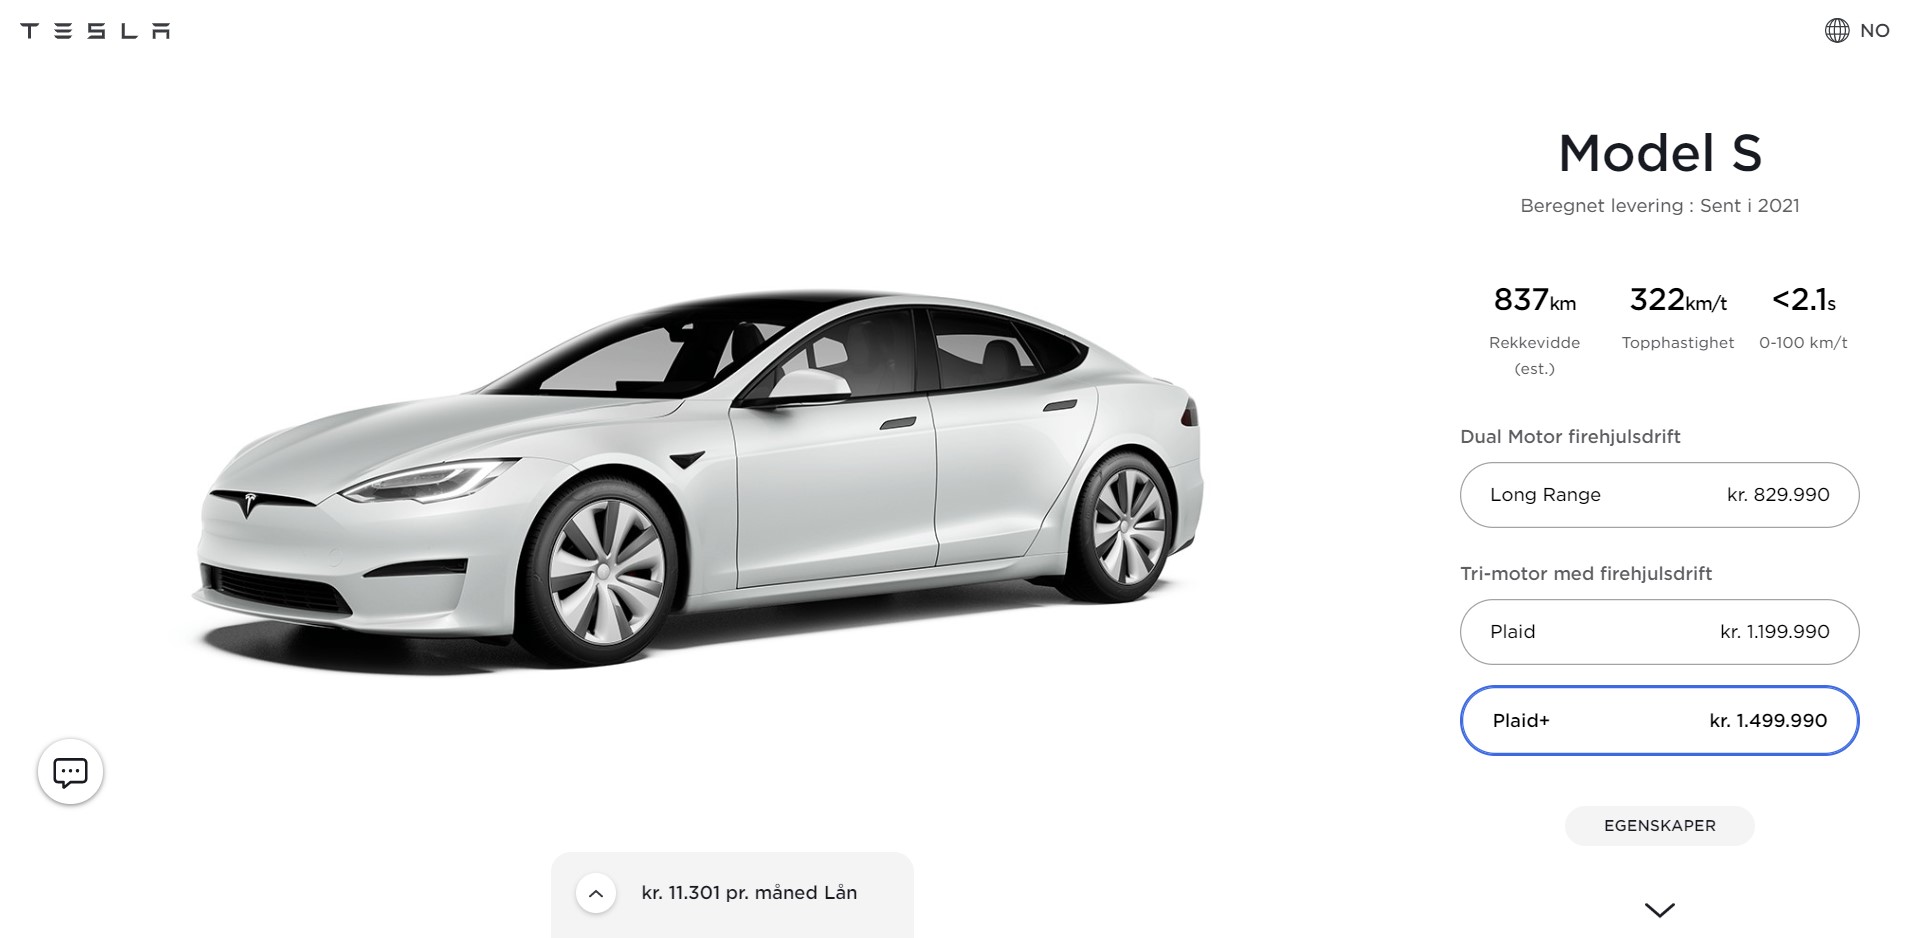 Tesla Model S Plaid+ odklad